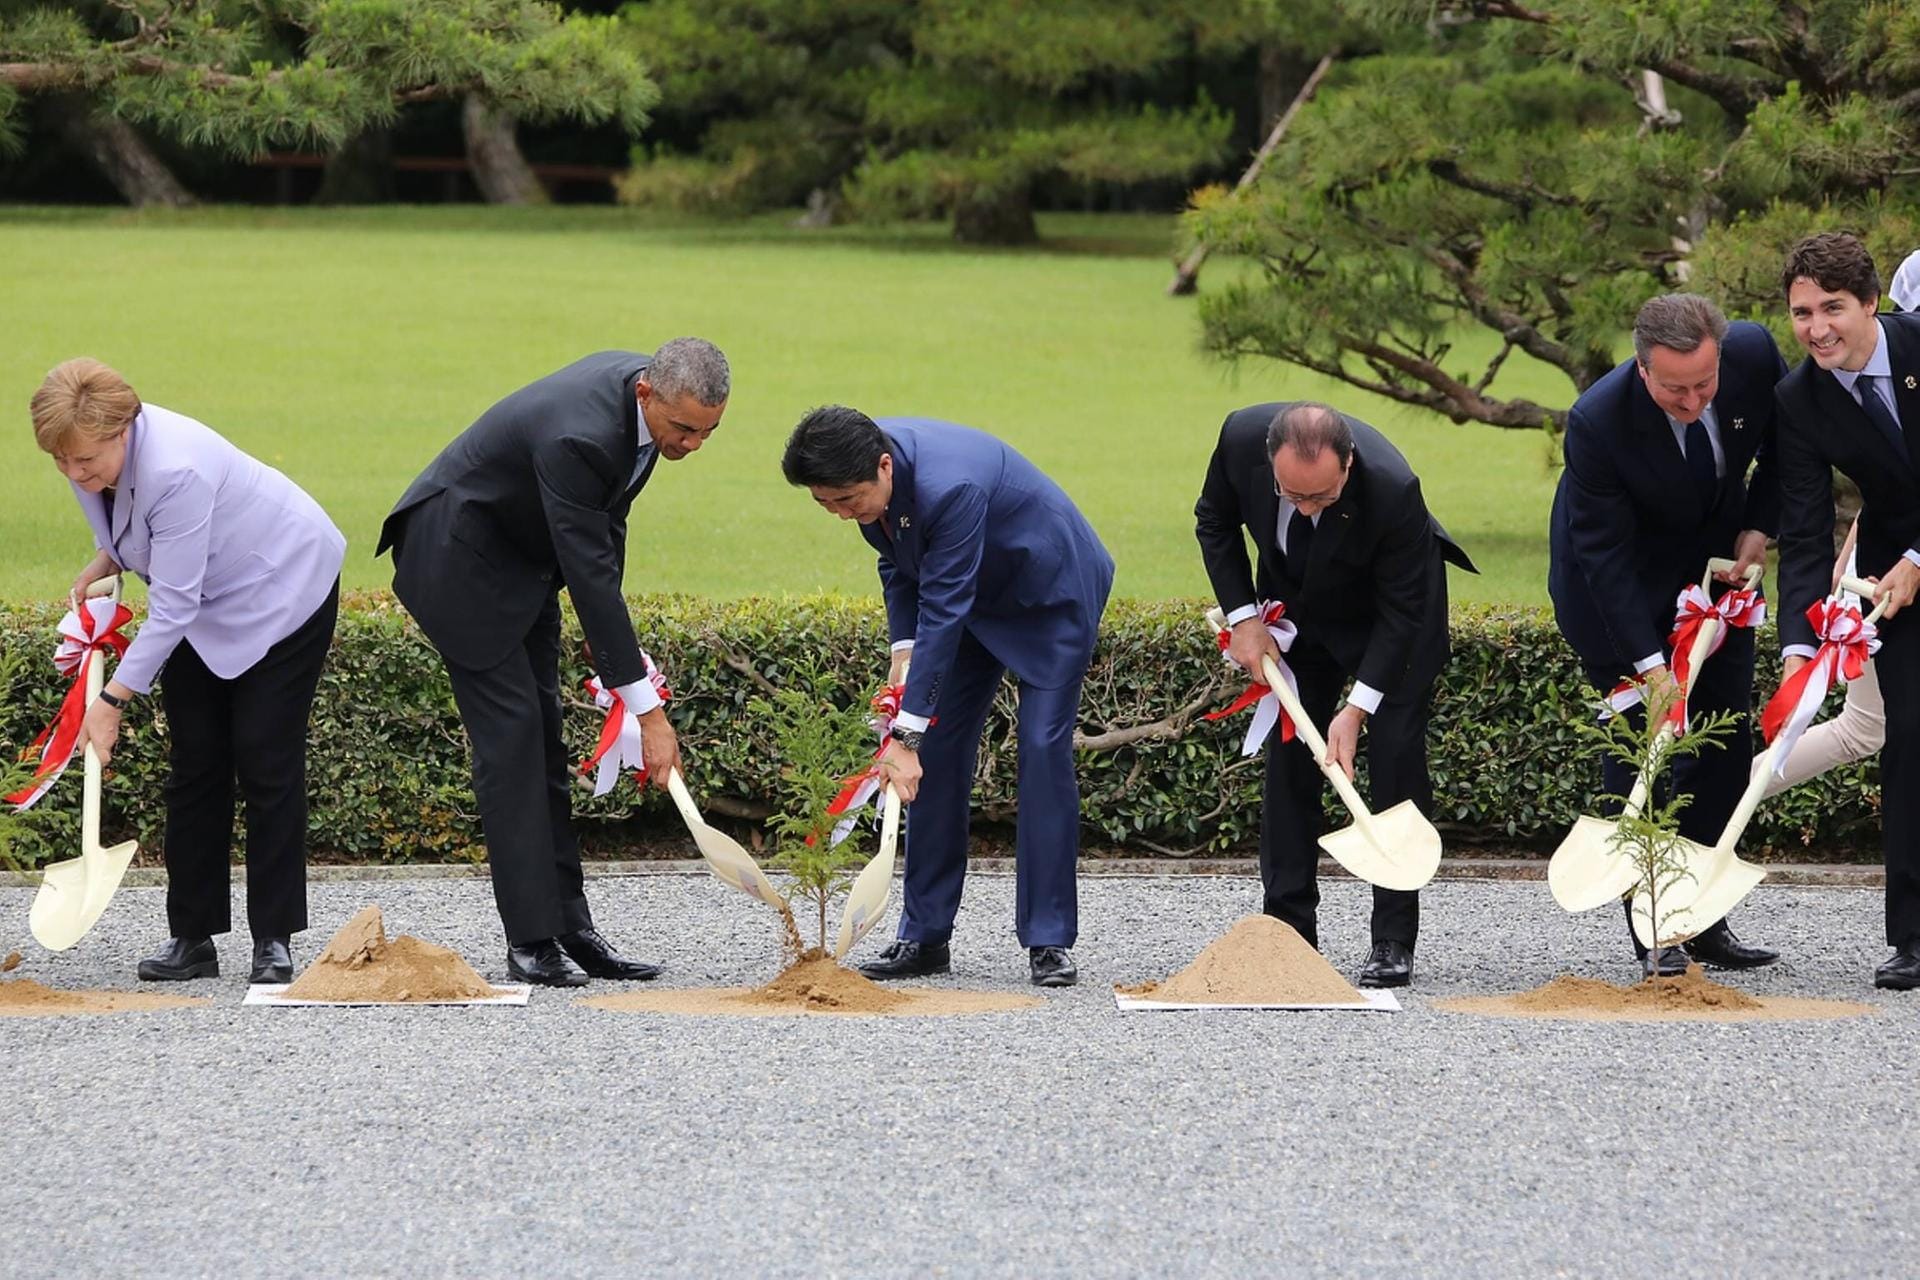 Angela Merkel, Barack Obama, Shinzo Abe, François Hollande, David Cameron und Justin Trudeau beim G7-Gipfel in Ise -Shima 2016 (Archiv): Die damaligen Staats- und Regierungschefs schaufelten gemeinsam Erde.